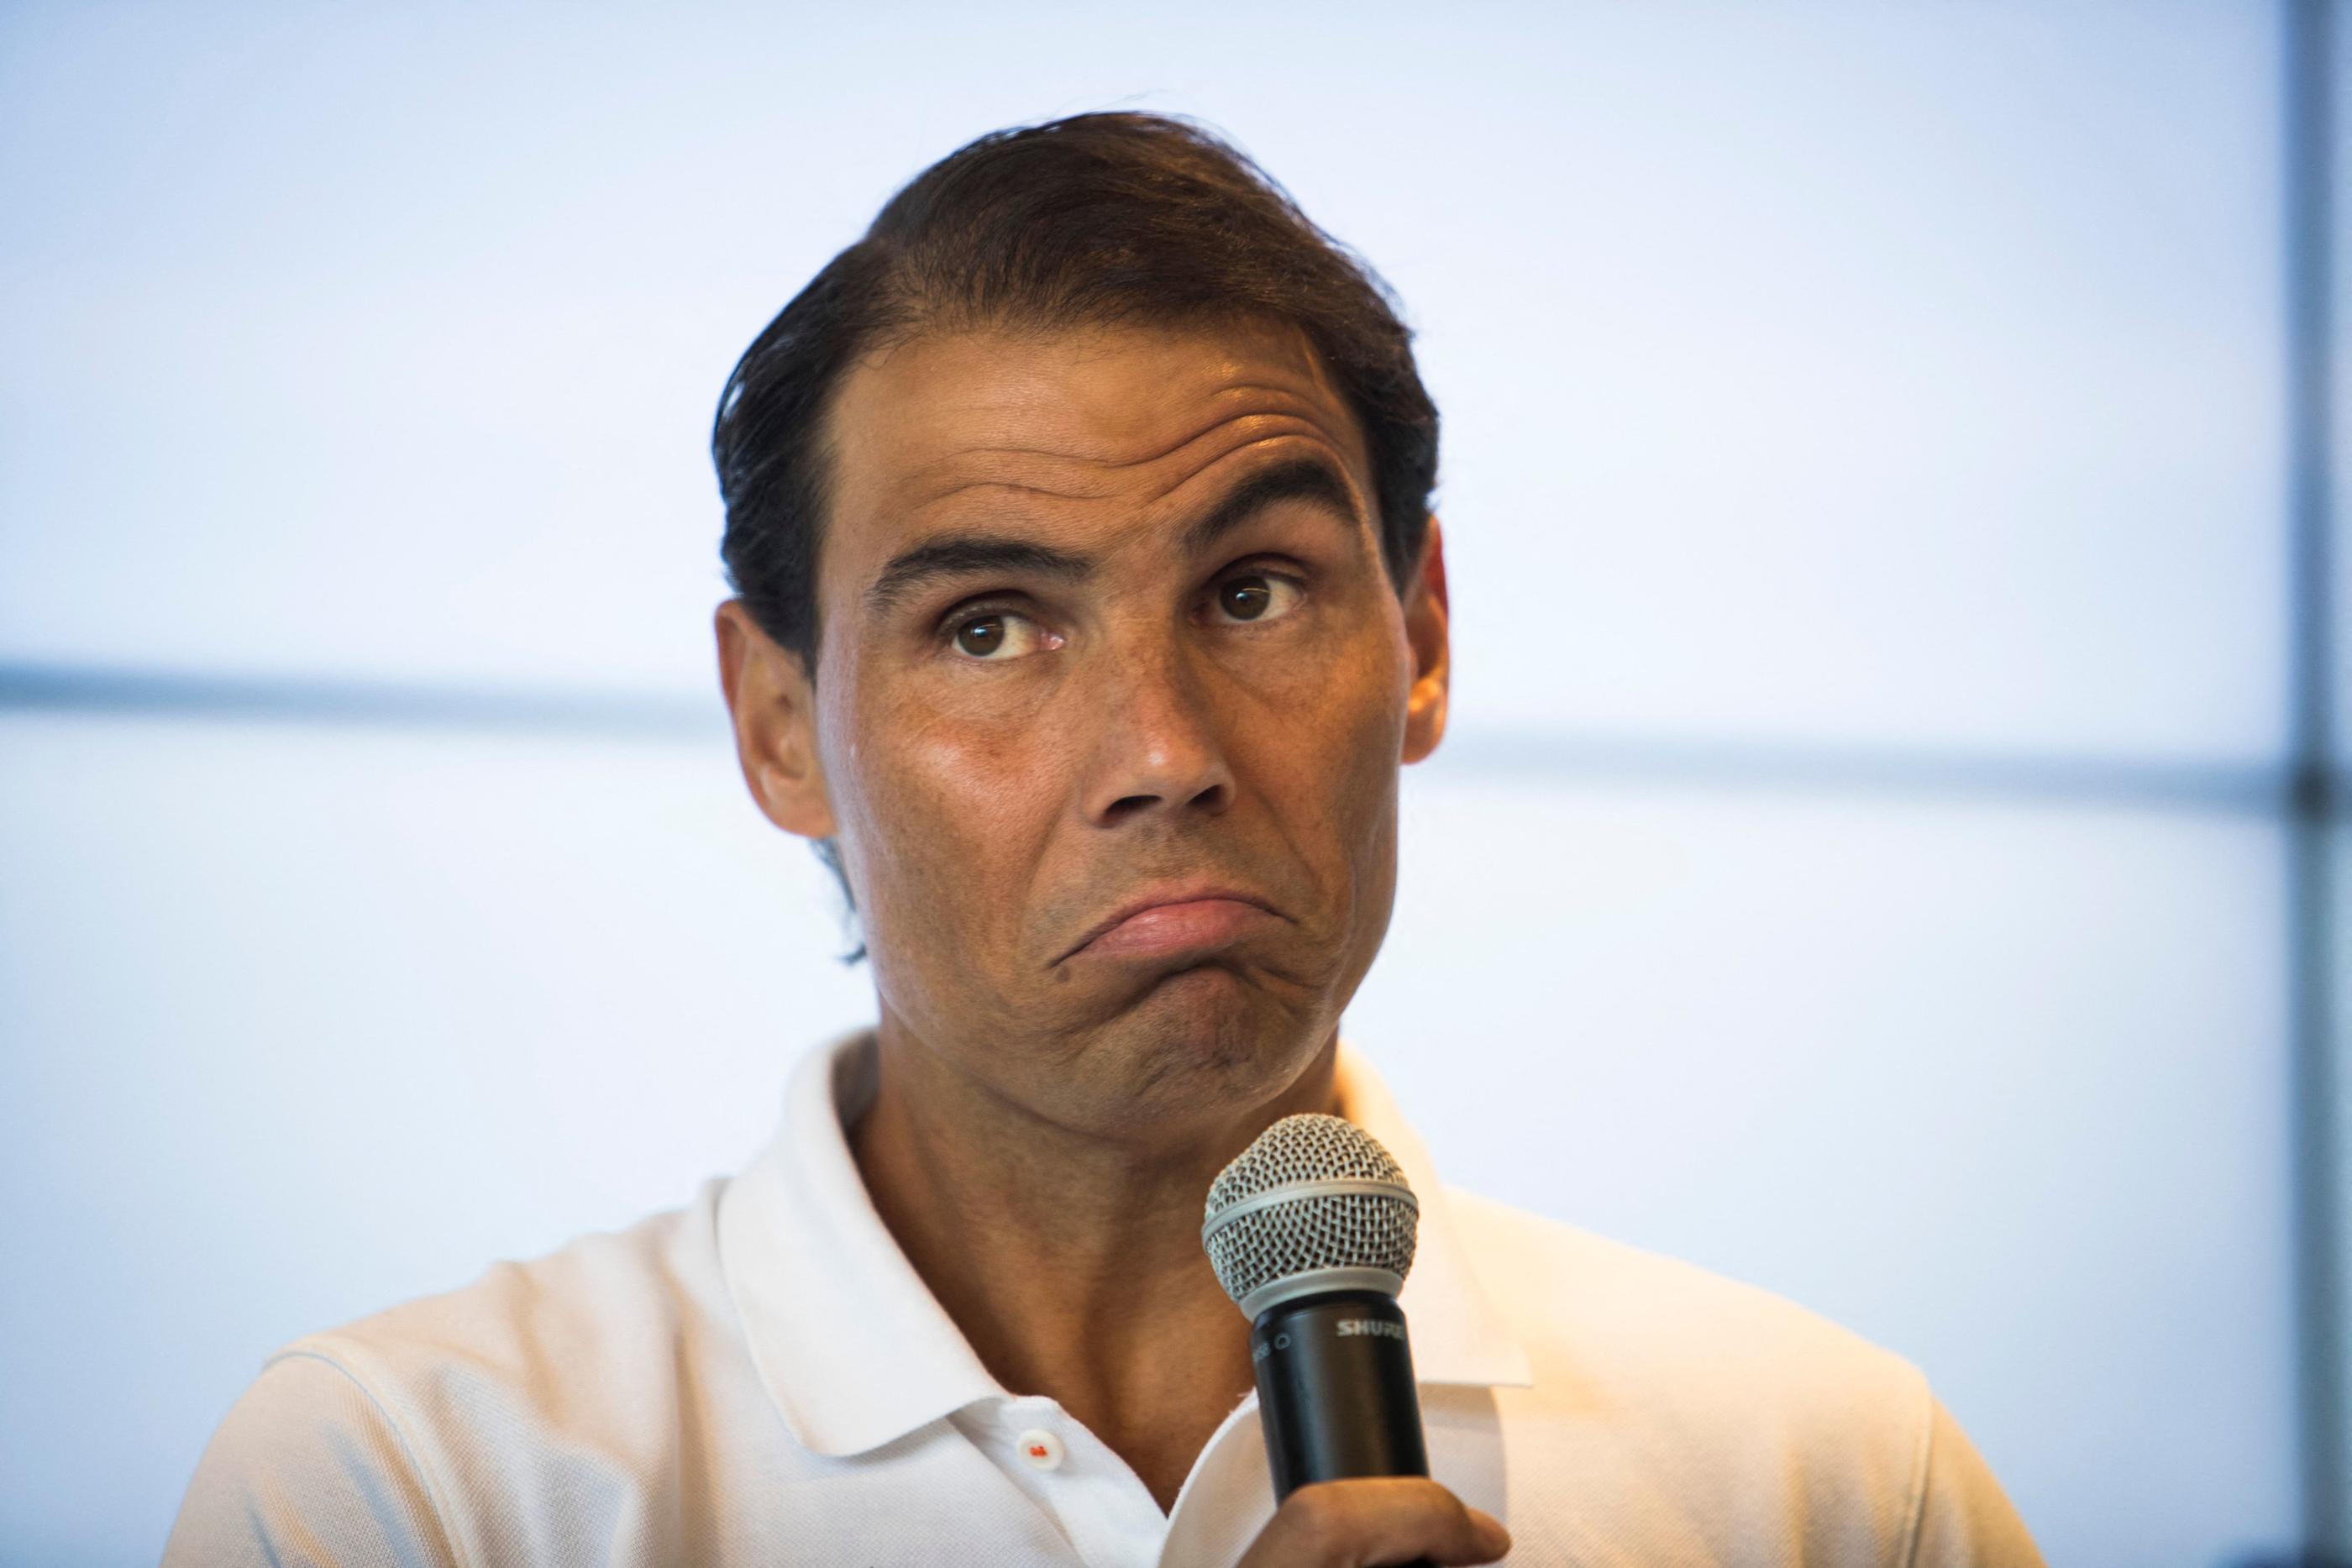 Rafael Nadal est apparu dubitatif jeudi en conférence de presse. AFP/Jaime Reina